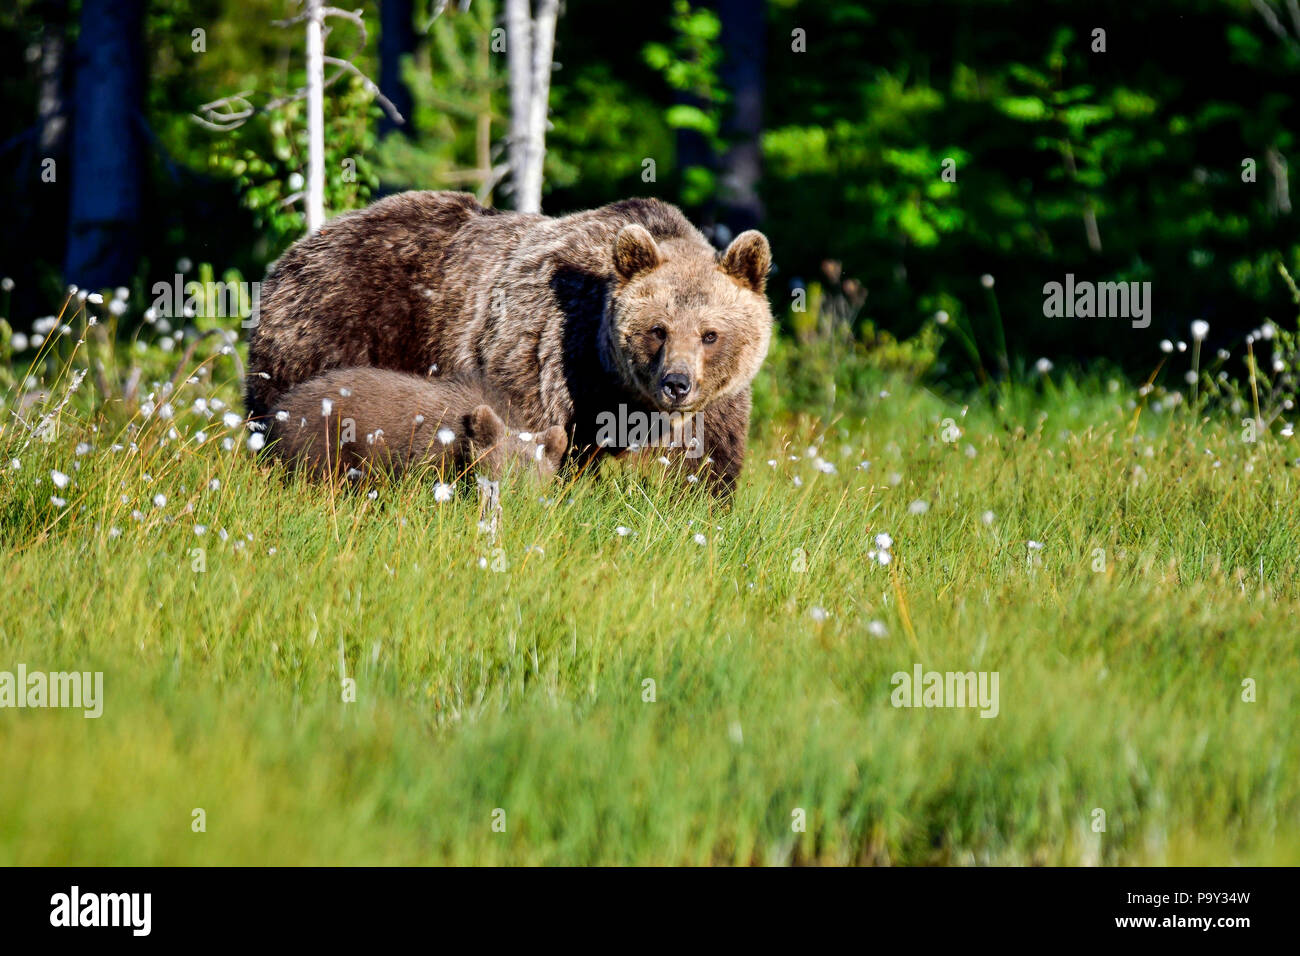 Maman ours brun avec un cub est saisi aux marais ouvert de la forêt. Cependant, c'est toujours pas sûr s'il est sûr de faire. Banque D'Images